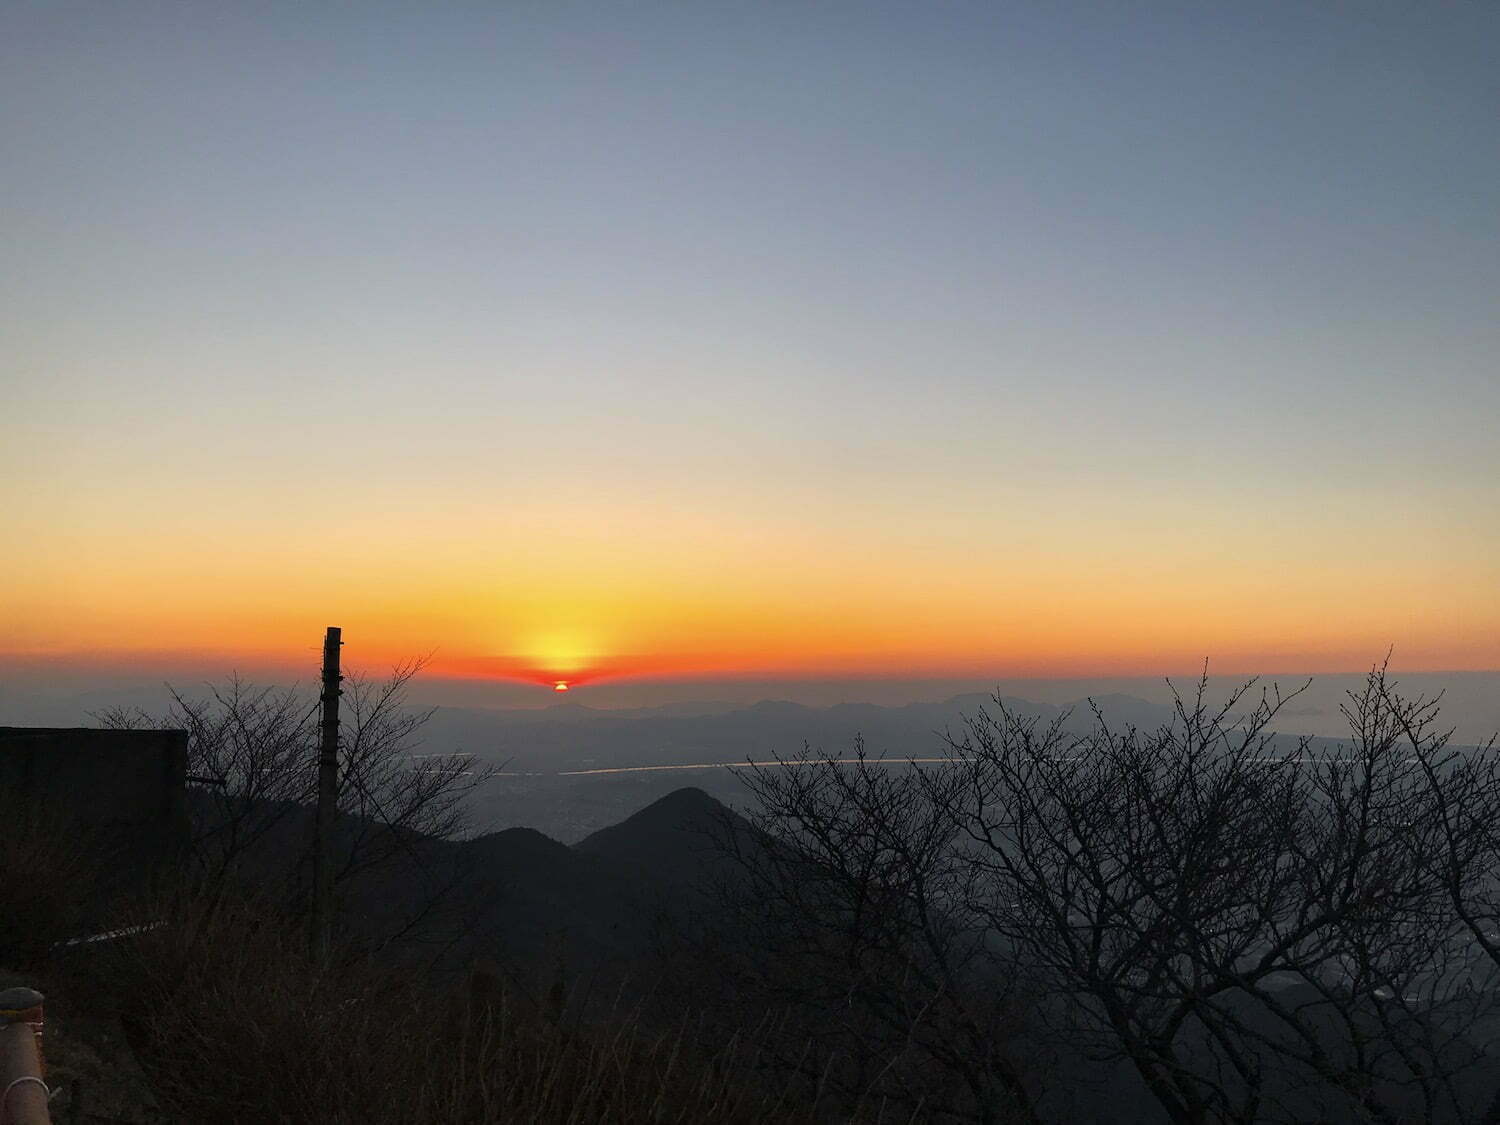 Sunset on Mt. Sarakura